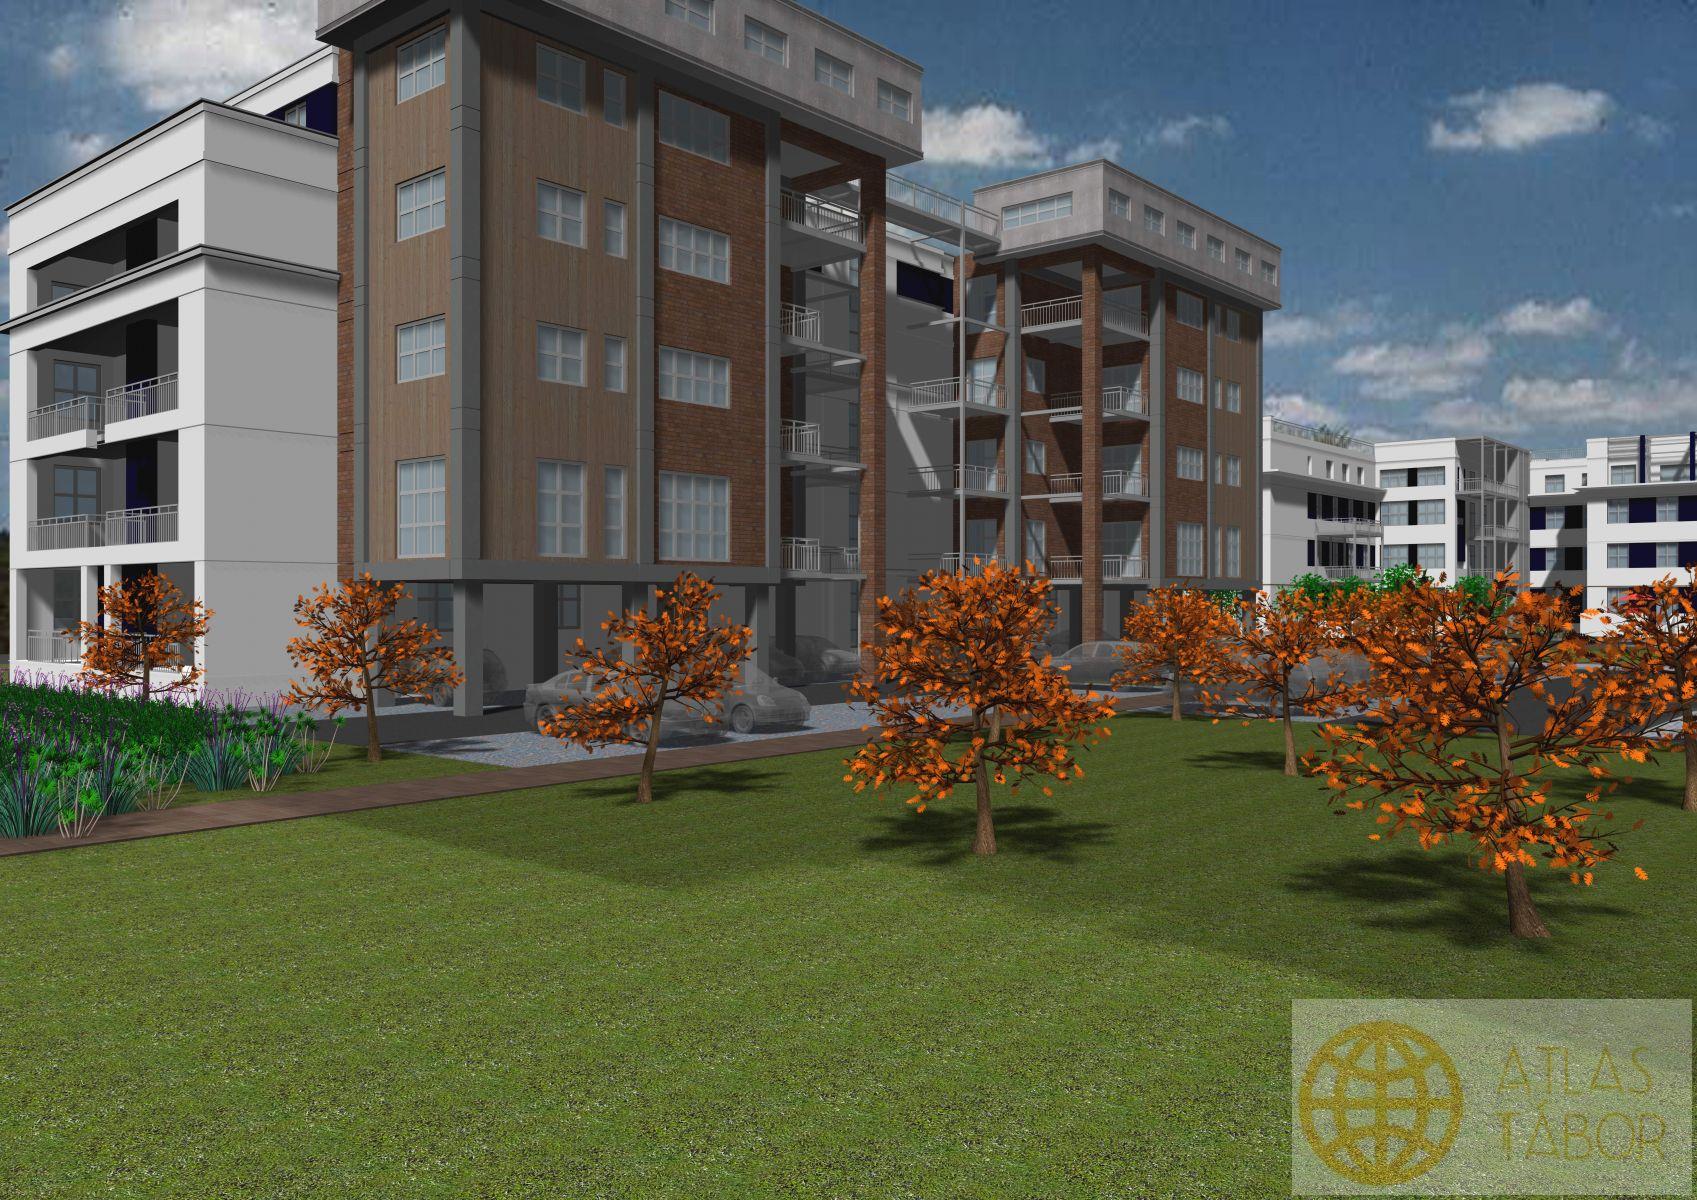 Nabídka nových bytů v projektu Dvorce II - byt č. 3.5.-2kk s lodžií  - 3.NP